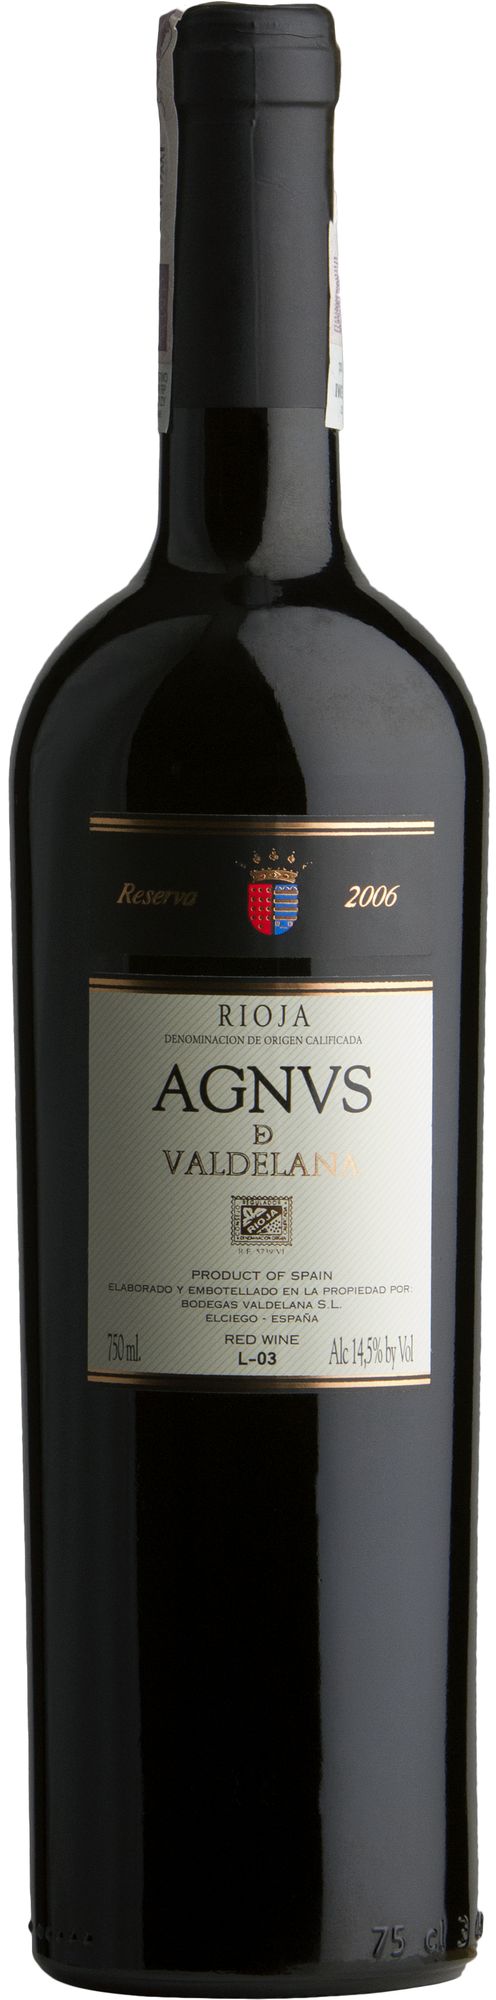 Wino Valdelana Agnus Reserva Rioja DOC